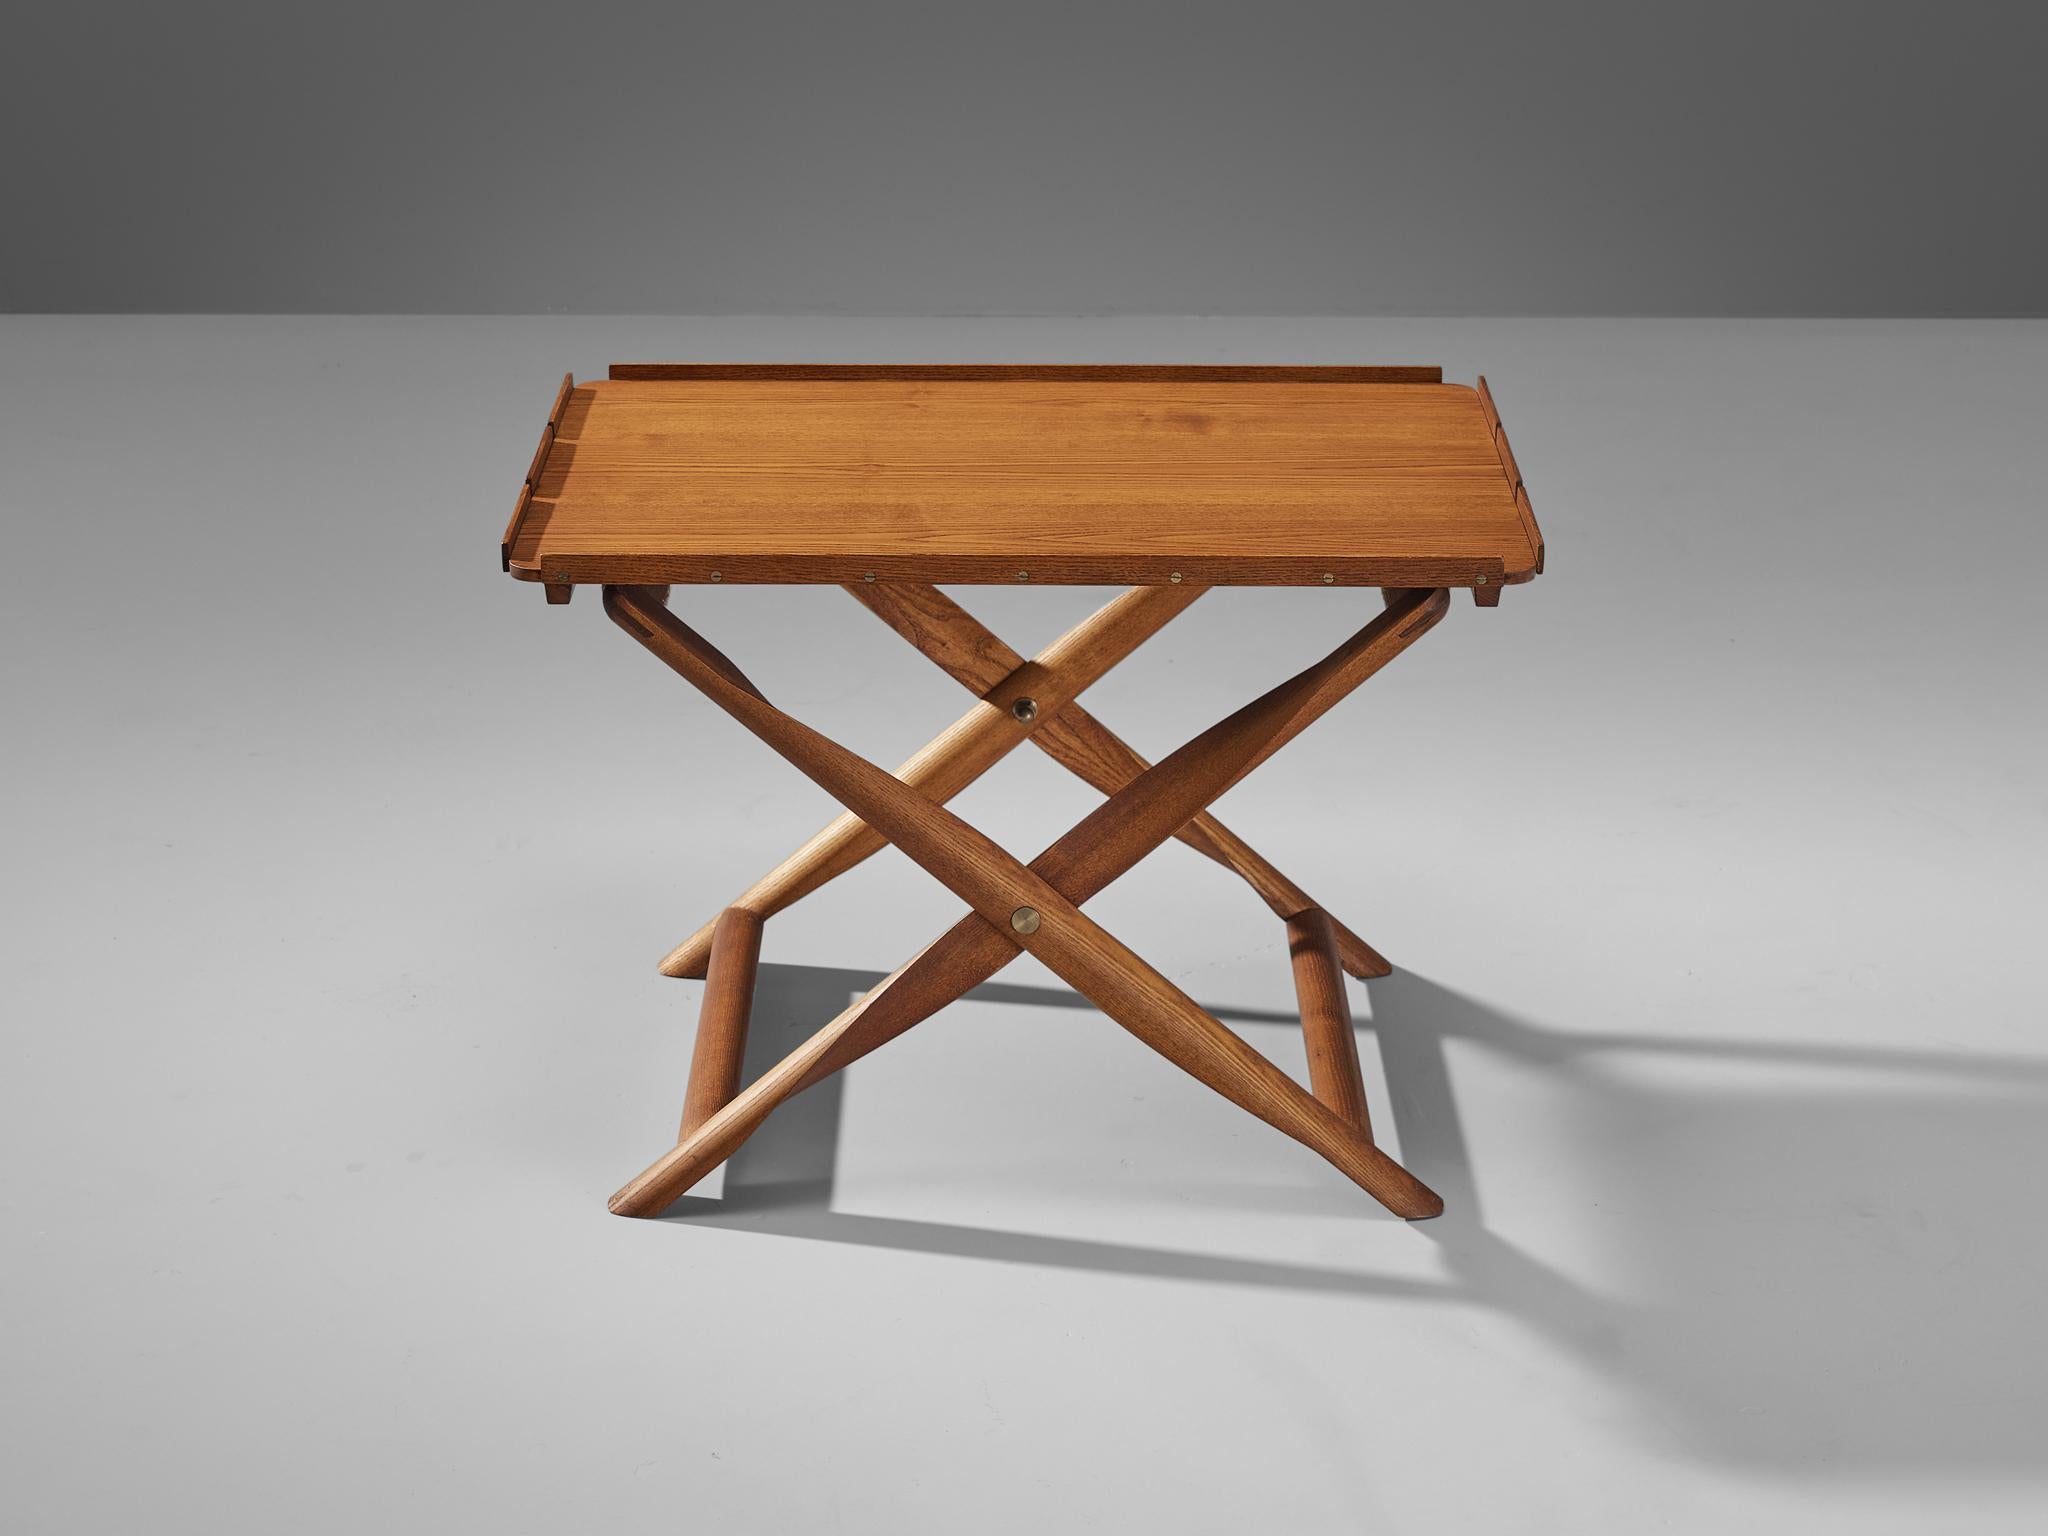 Scandinavian Modern Kaare Klint for Rud, Rasmussens Snedkekier Folding Stool with Tray Table